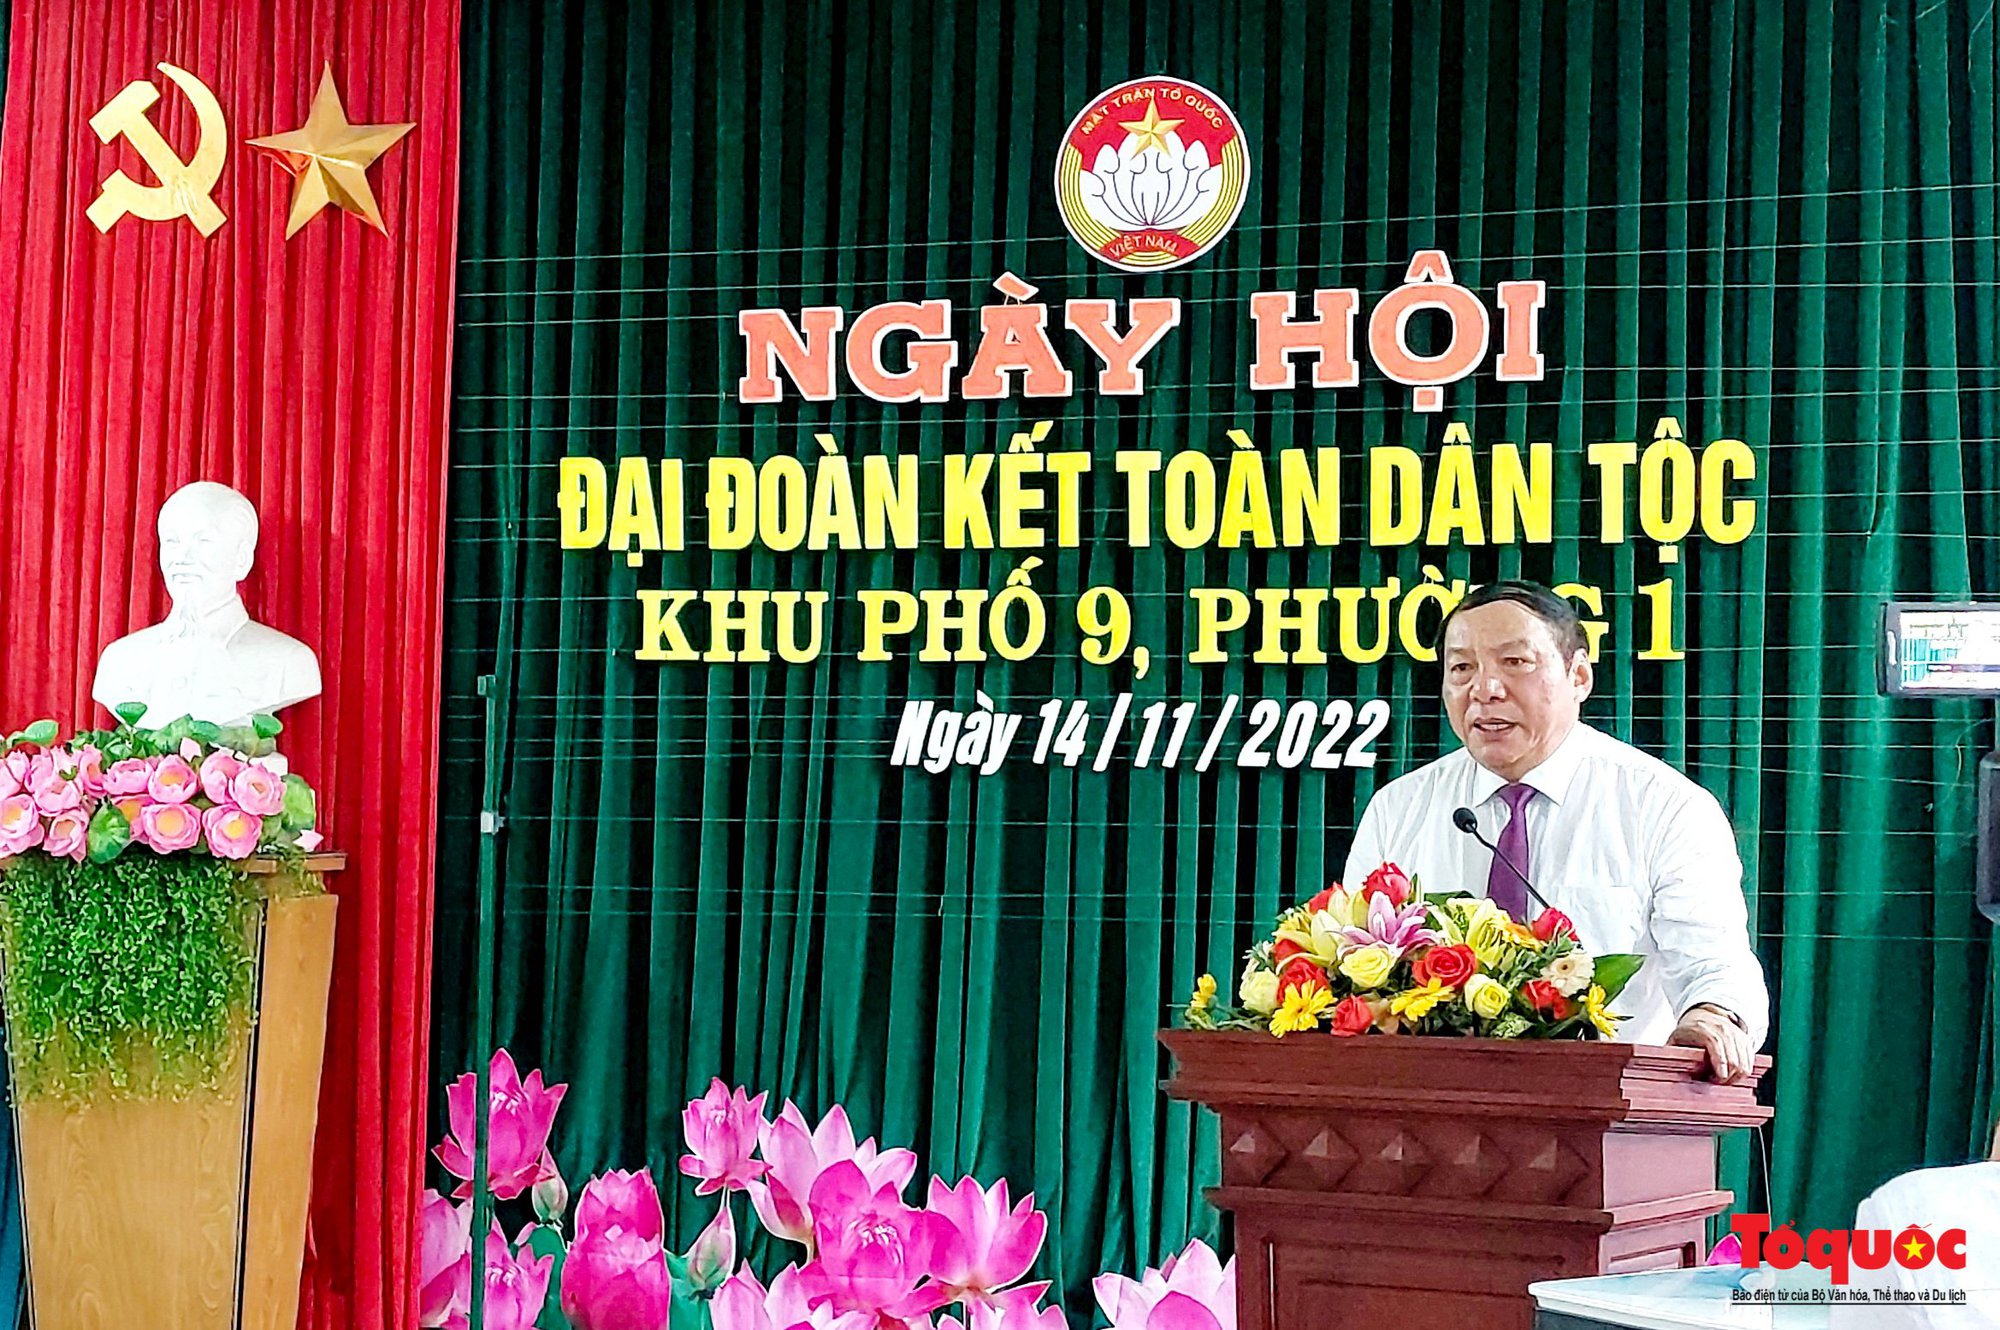 Ngày hội Đại đoàn kết các dân tộc Việt Nam: Ngày hội Đại đoàn kết các dân tộc Việt Nam là một sự kiện quan trọng để tôn vinh và giữ gìn tình đoàn kết và thống nhất của cả nước. Với nhiều hoạt động đa dạng, sự kiện này sẽ đem lại cho bạn trải nghiệm văn hóa đa dạng và đầy ý nghĩa.